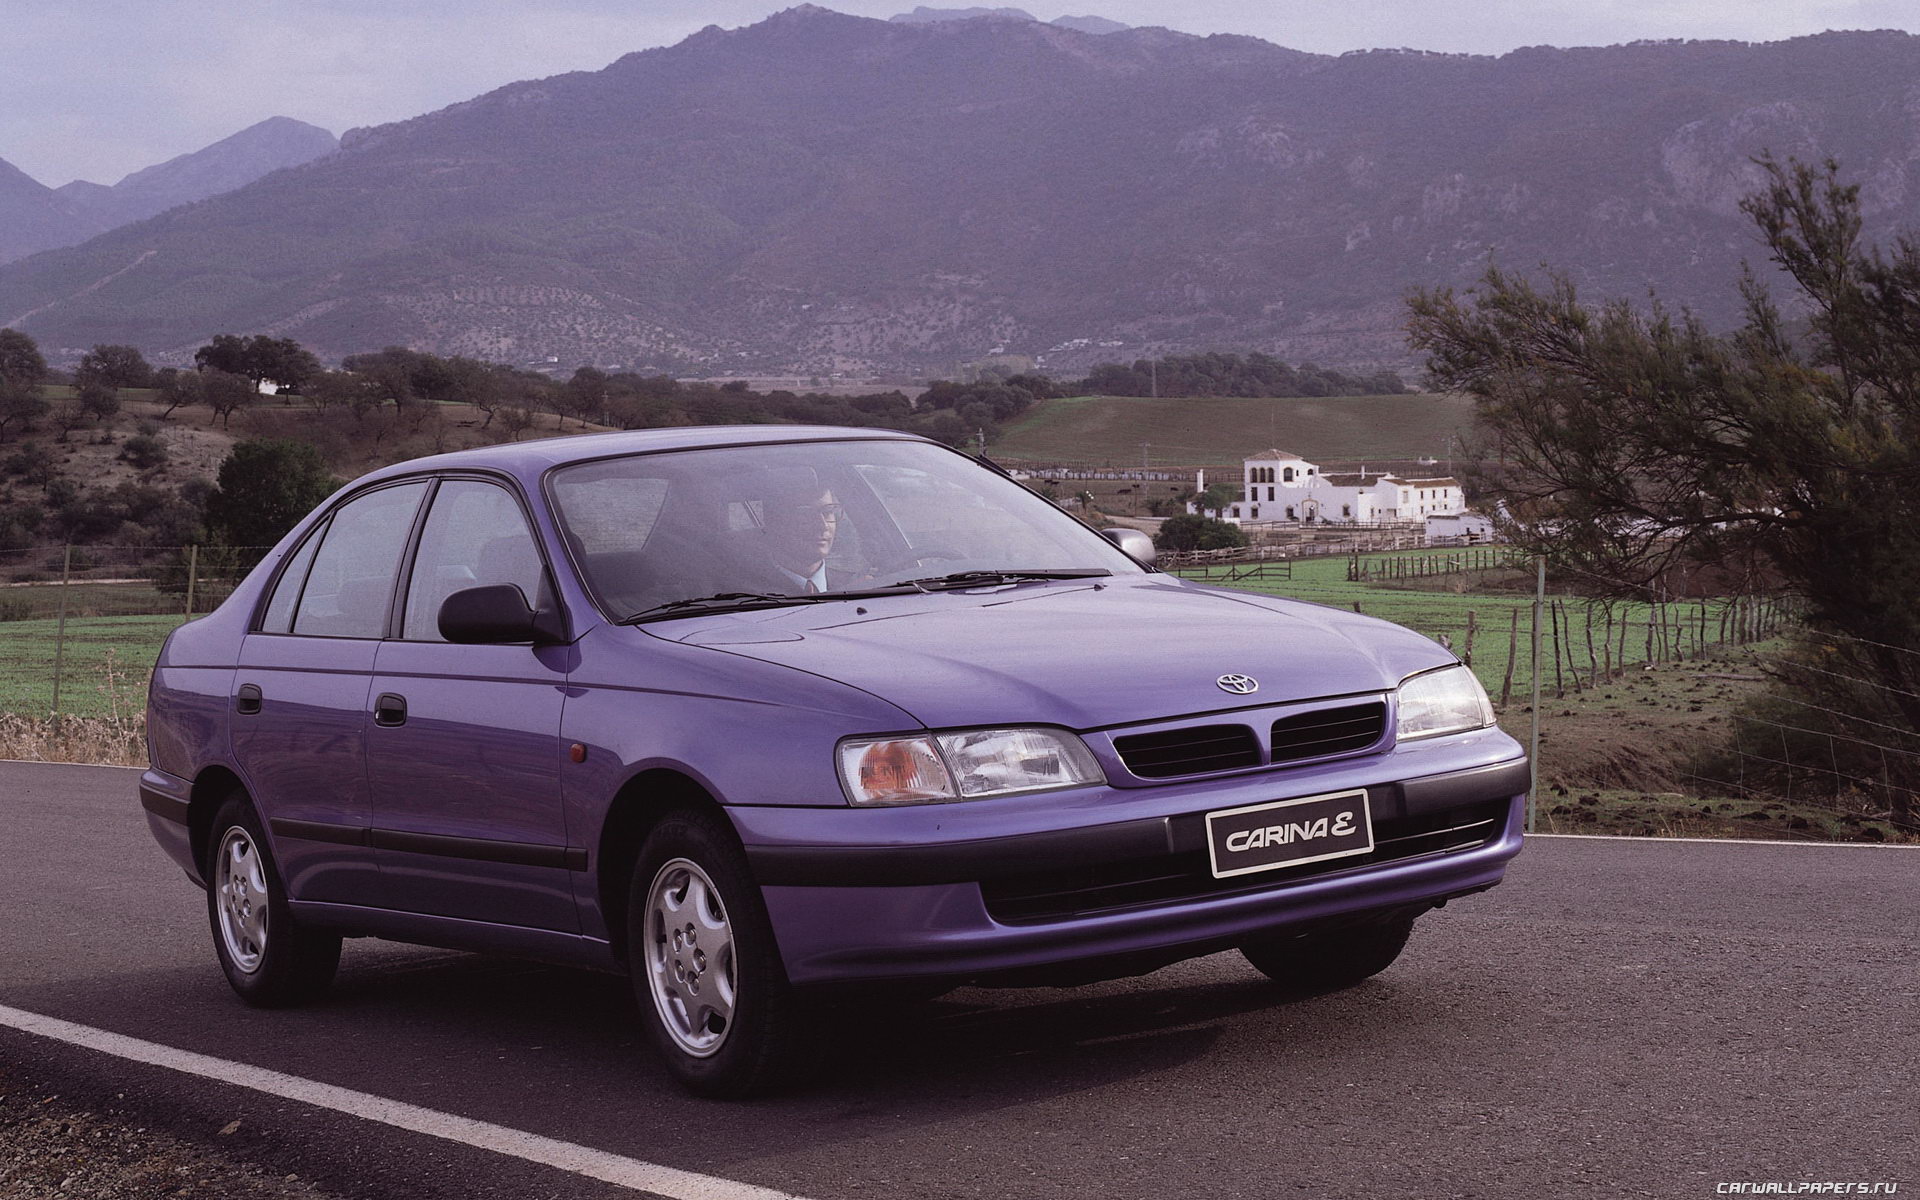 Carina cos. Toyota Carina e. Toyota Carina 1996.